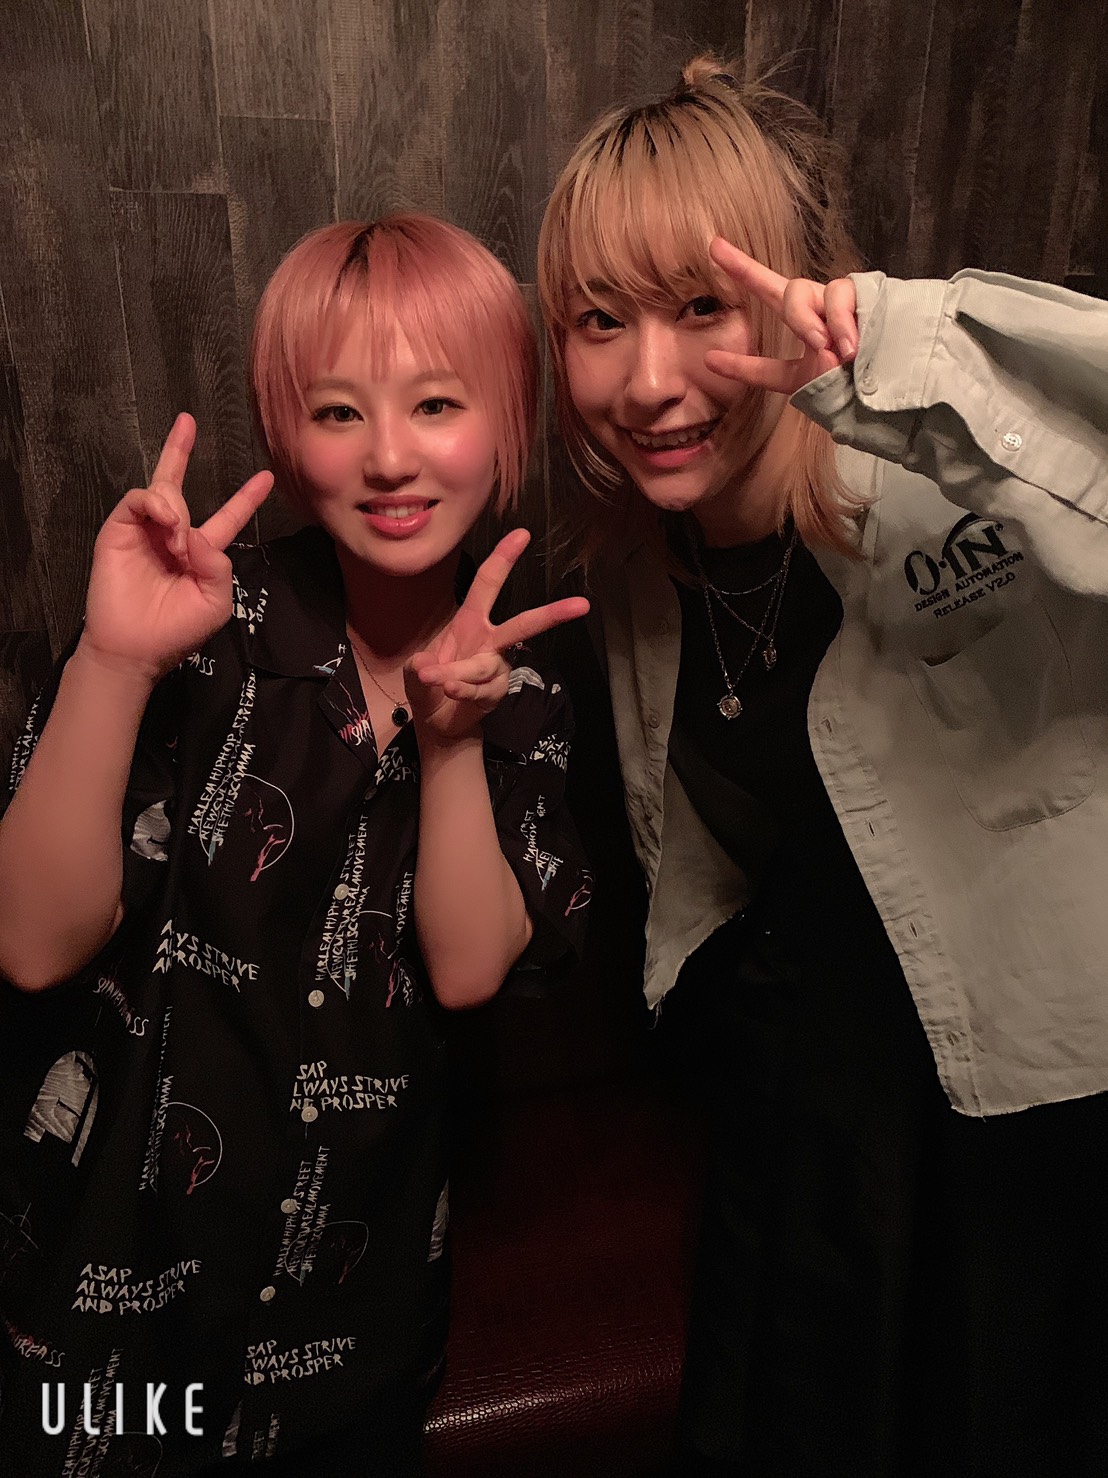 https://bar-rockaholic.jp/shibuya/blog/S__4382789.jpg